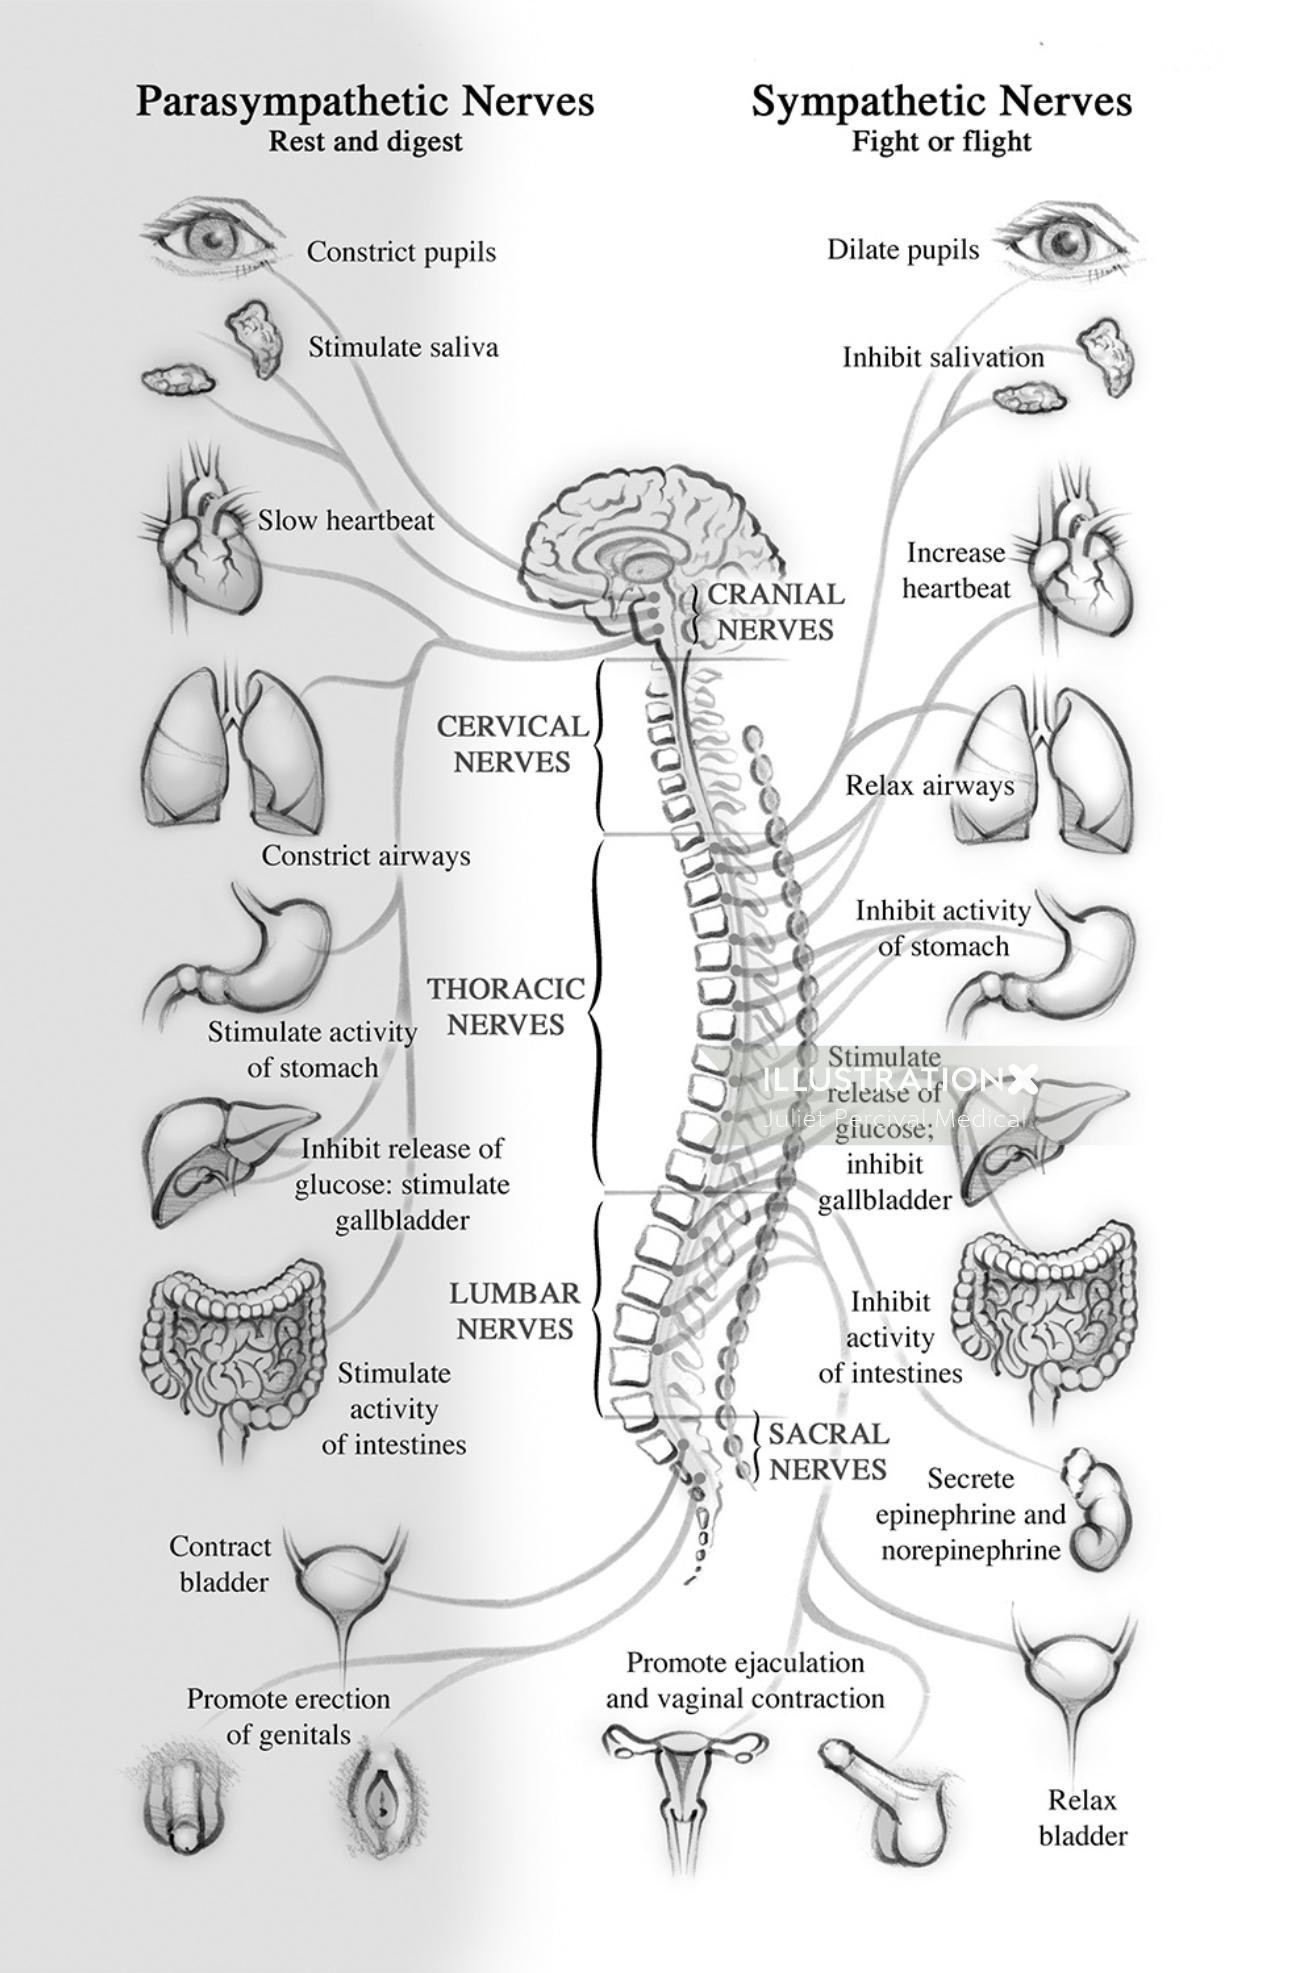 anatomie, nerfs, système nerveux, cerveau, moelle épinière